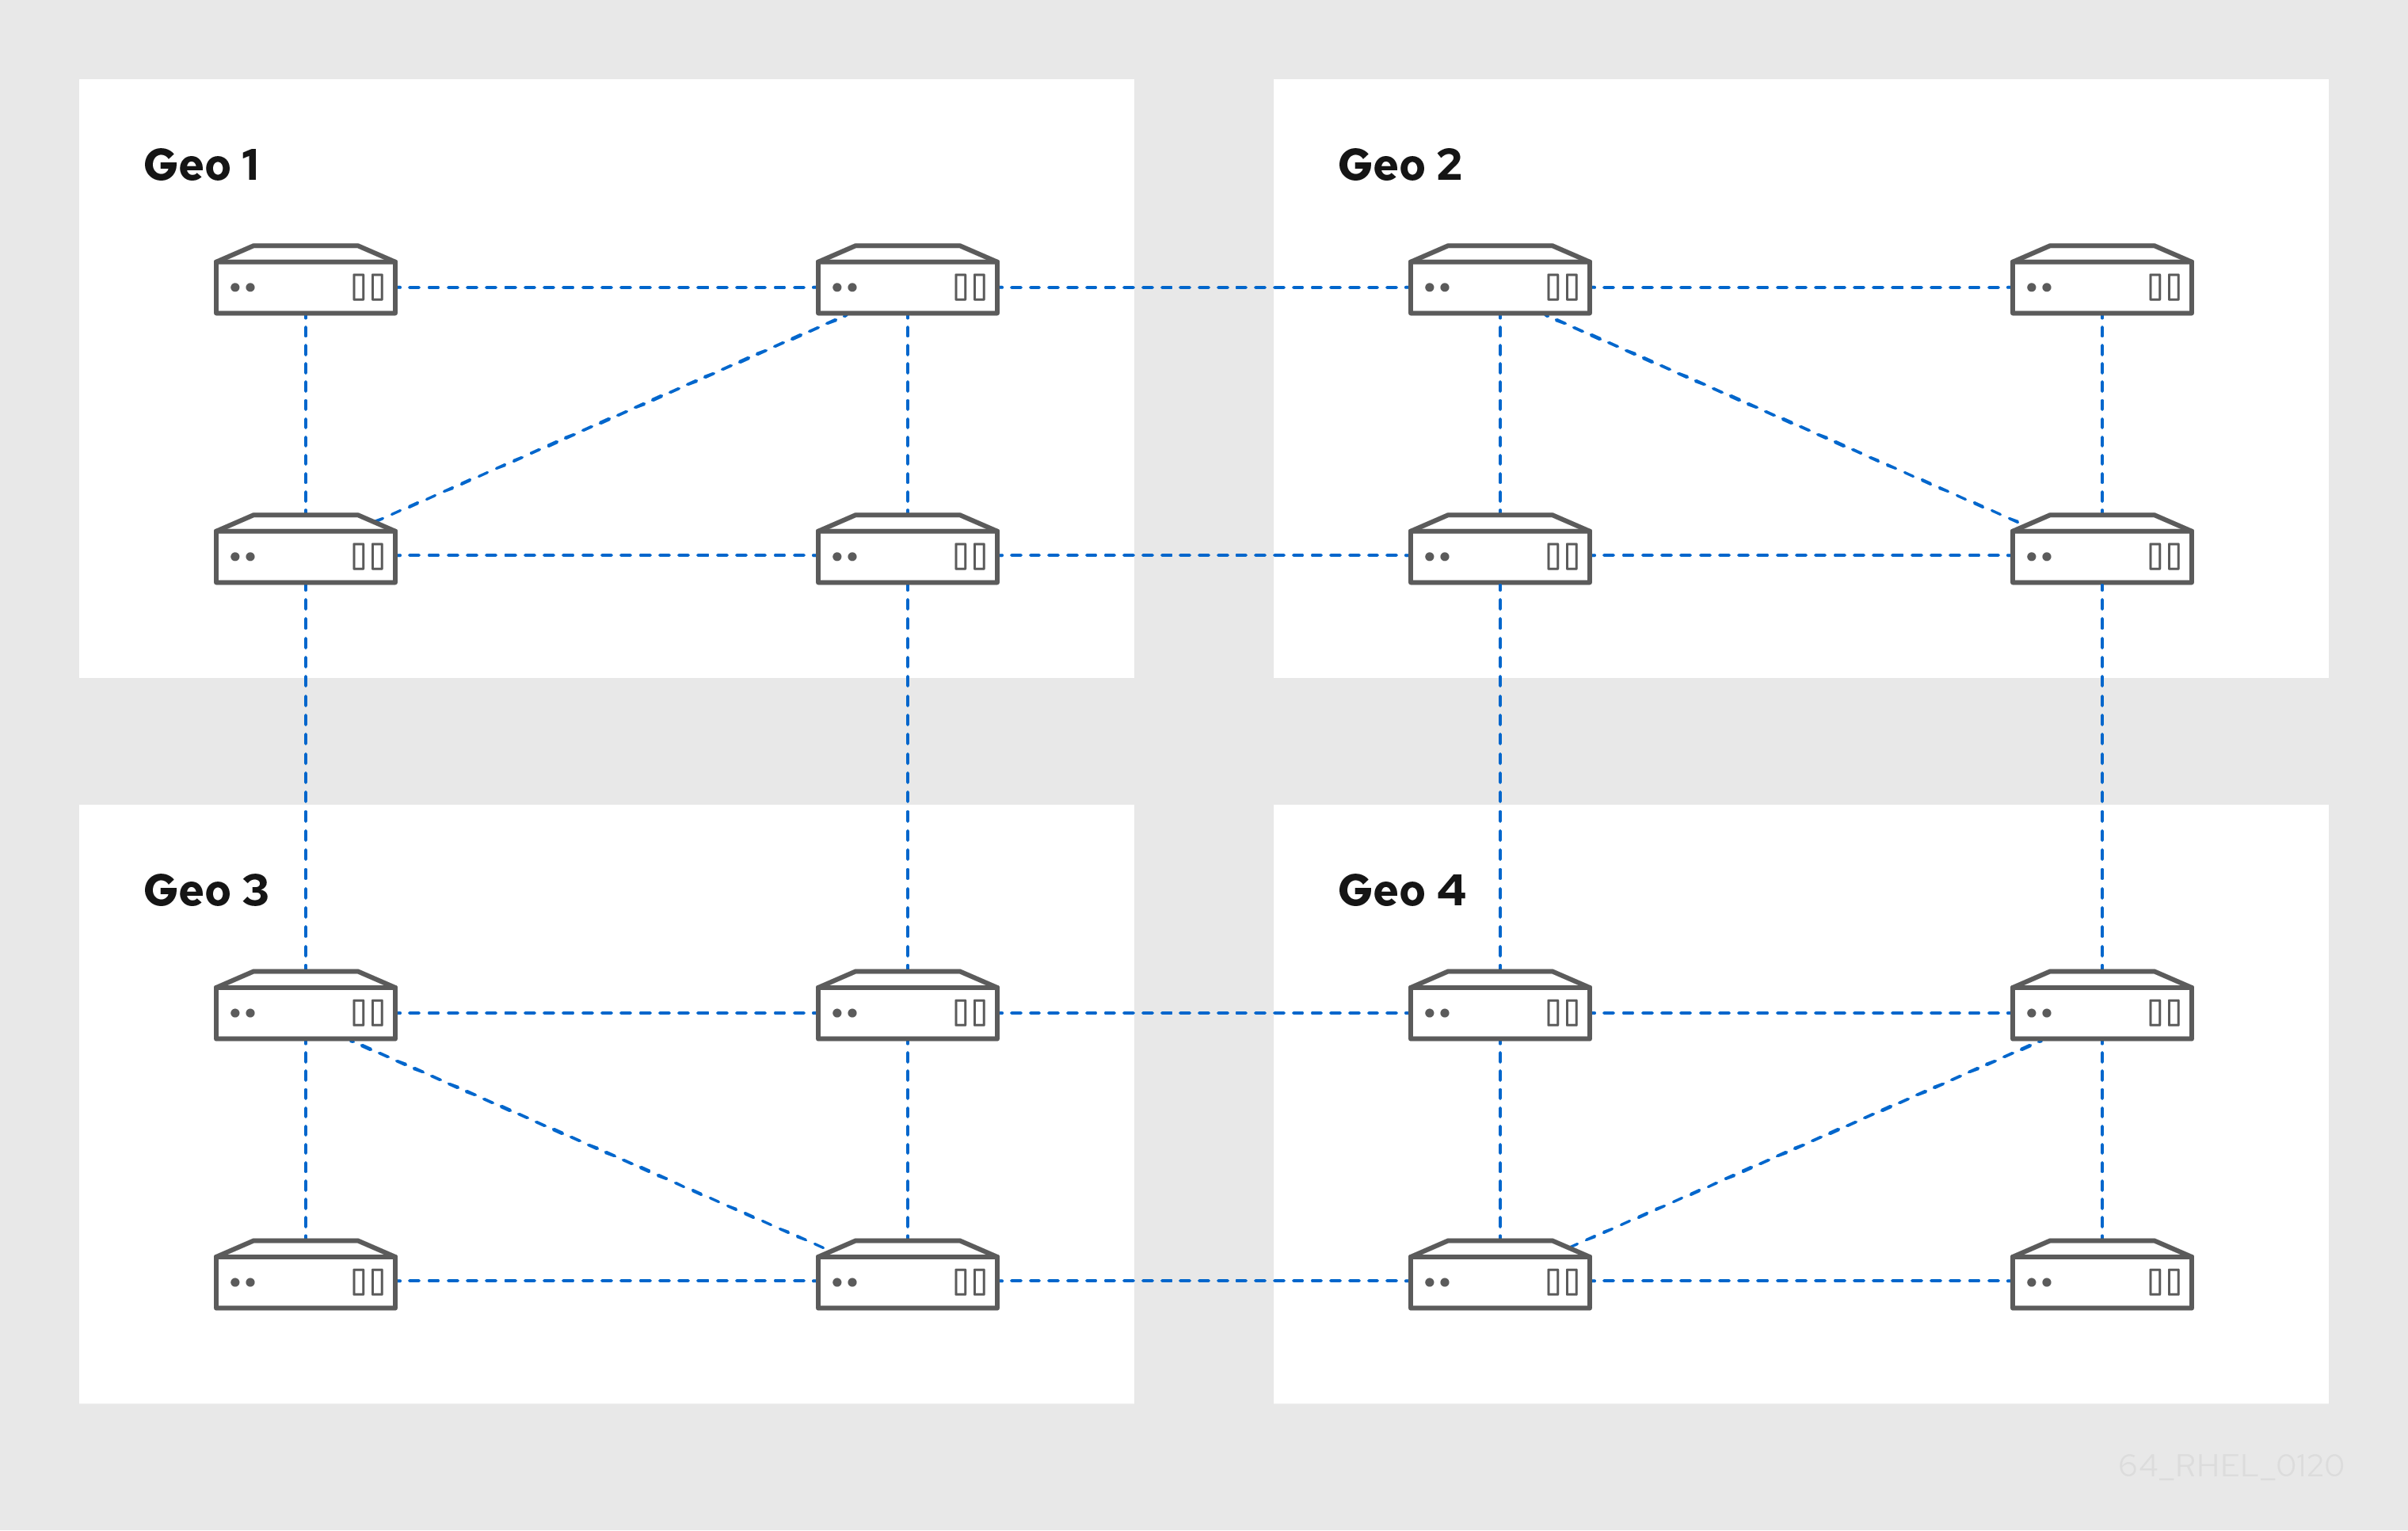 4 つのデータセンターを示す図: Geo 1 から 4各データセンターに 4 つのサーバーがあり、レプリカ合意で相互に接続されています。また、Geo 1 の 2 つのサーバーを Geo 2 の 2 つのサーバーに接続するレプリカ合意があります。さらに、Geo 2 の 2 つのサーバーが Geo 3 の 2 つのサーバーに接続され、Geo 3 の 2 台のサーバーが Geo 4 に接続されています。これにより、各データセンターが接続され、各サーバーが別の Geo から最大 3 ホップ離れた位置に配置されます。